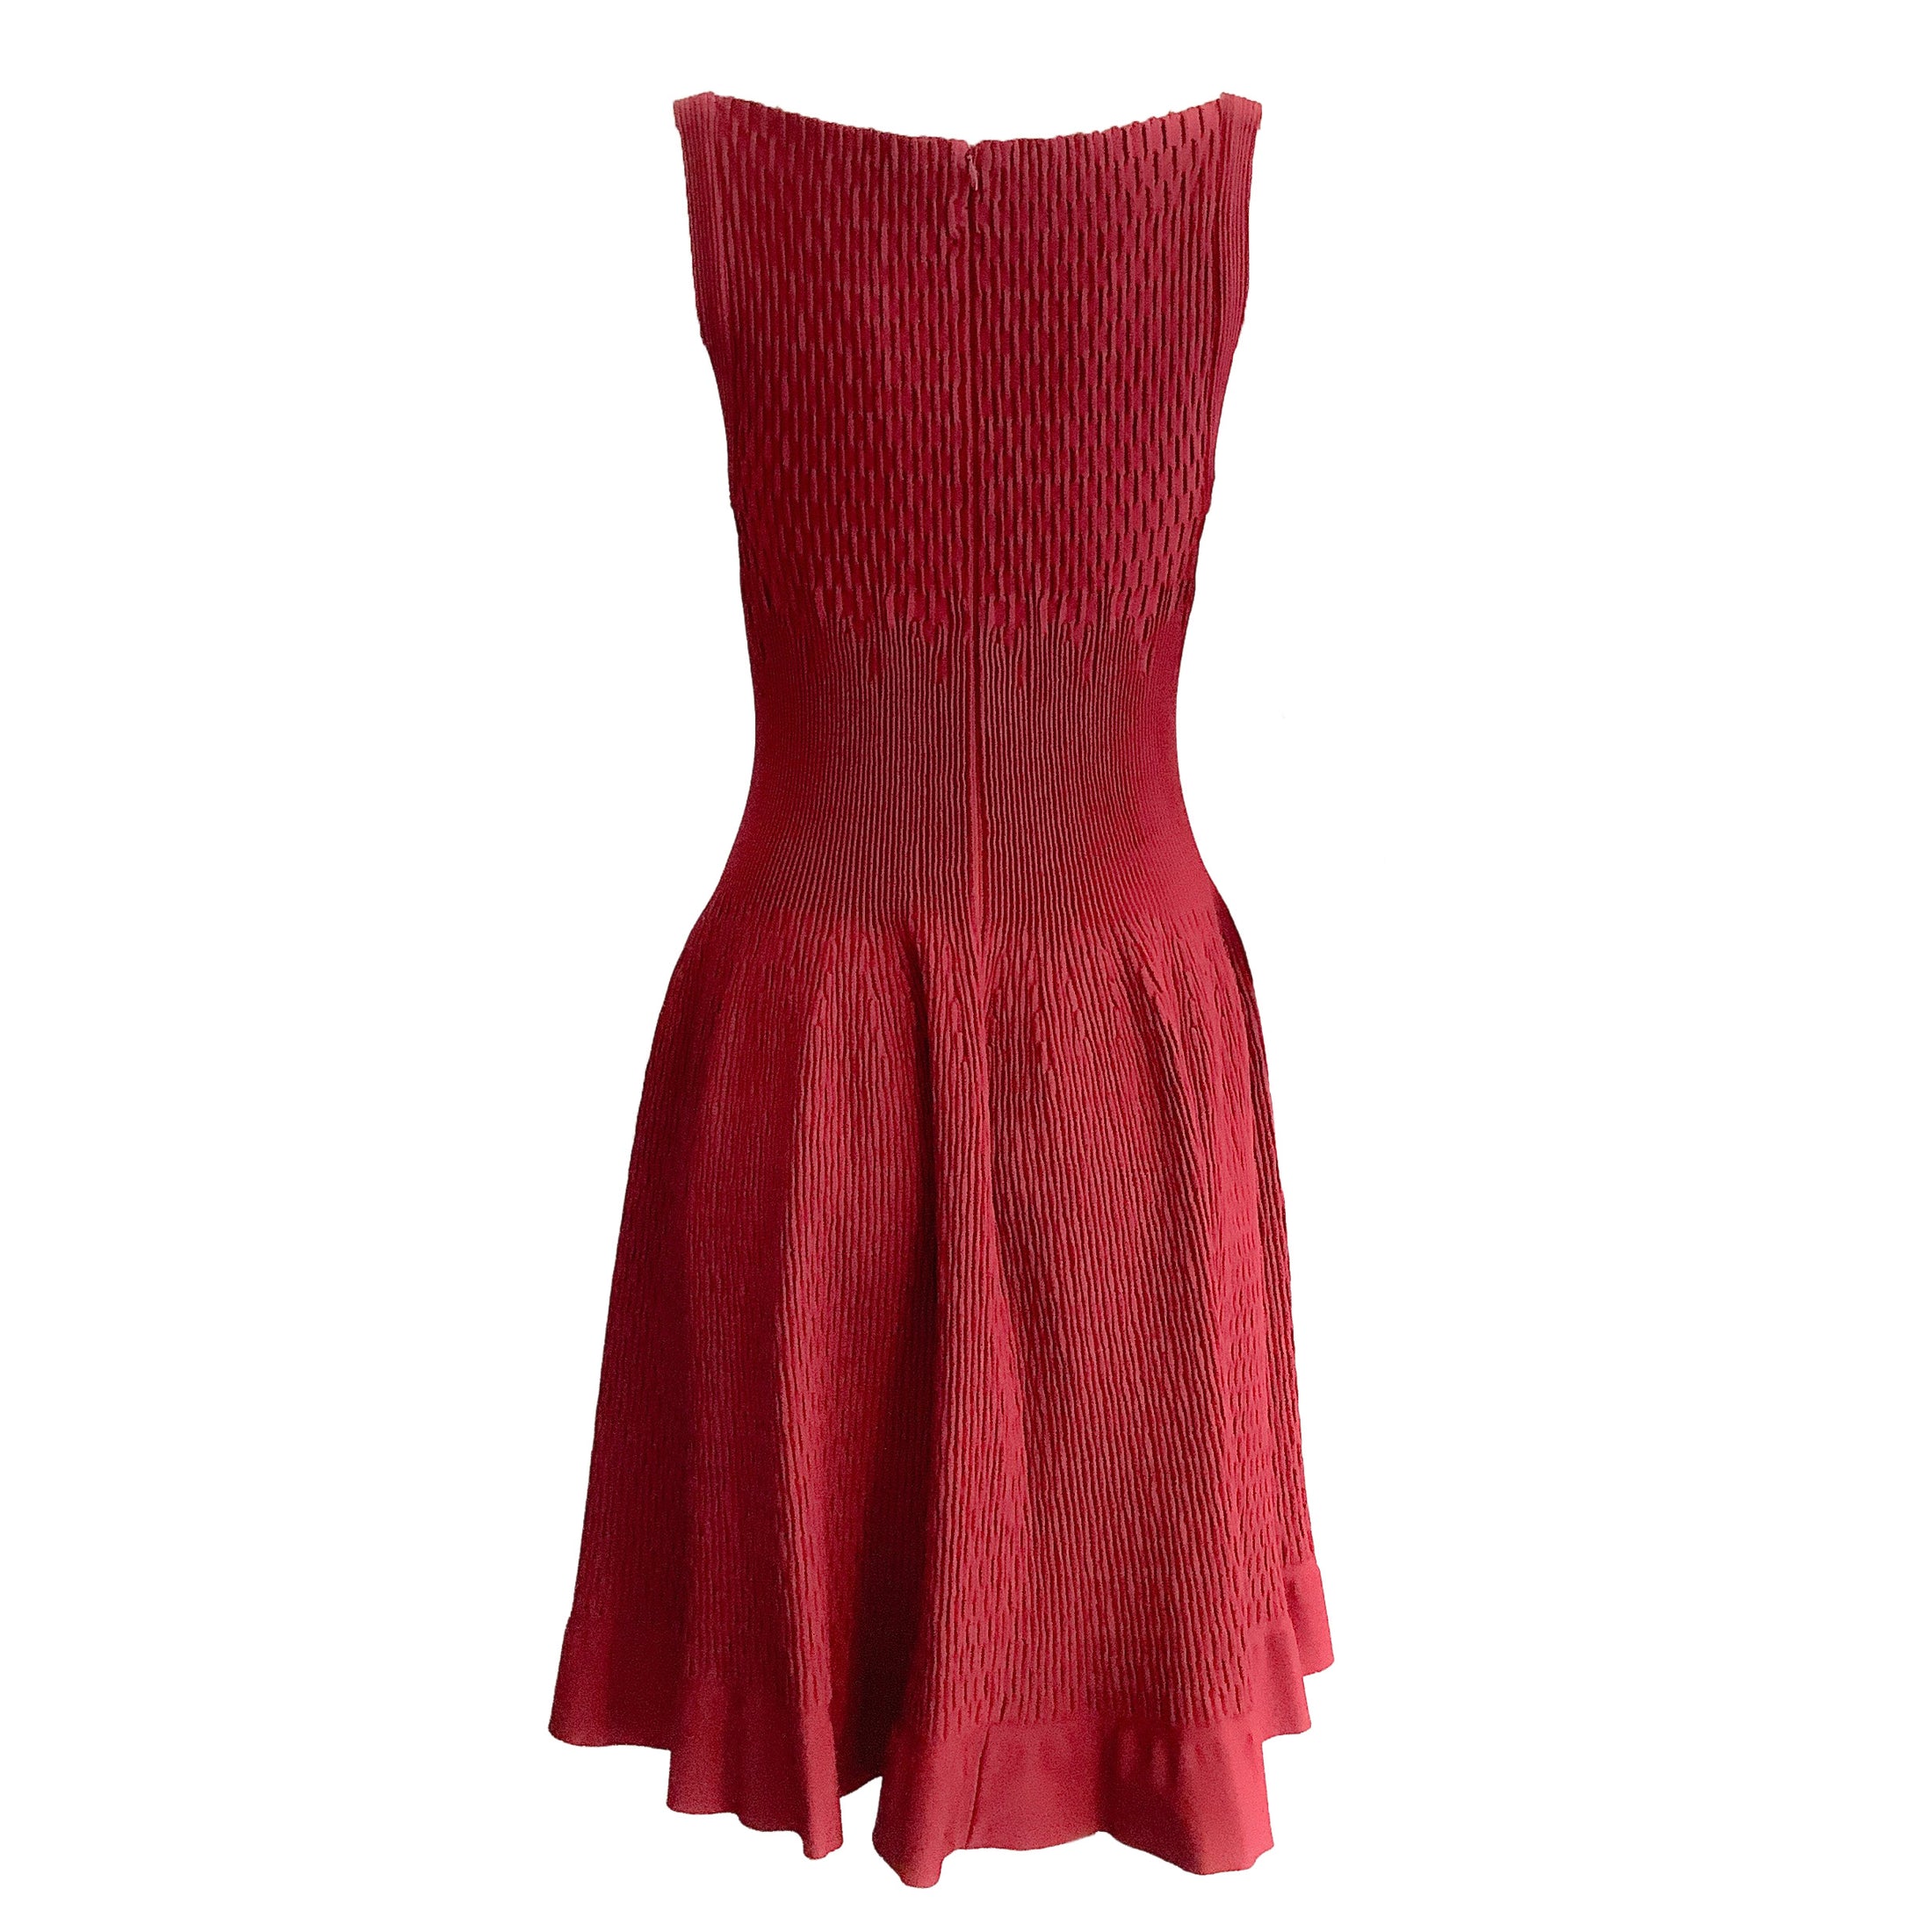 ALAÏA Burgundy Rib Knit Fit & Flare Short Casual Dress